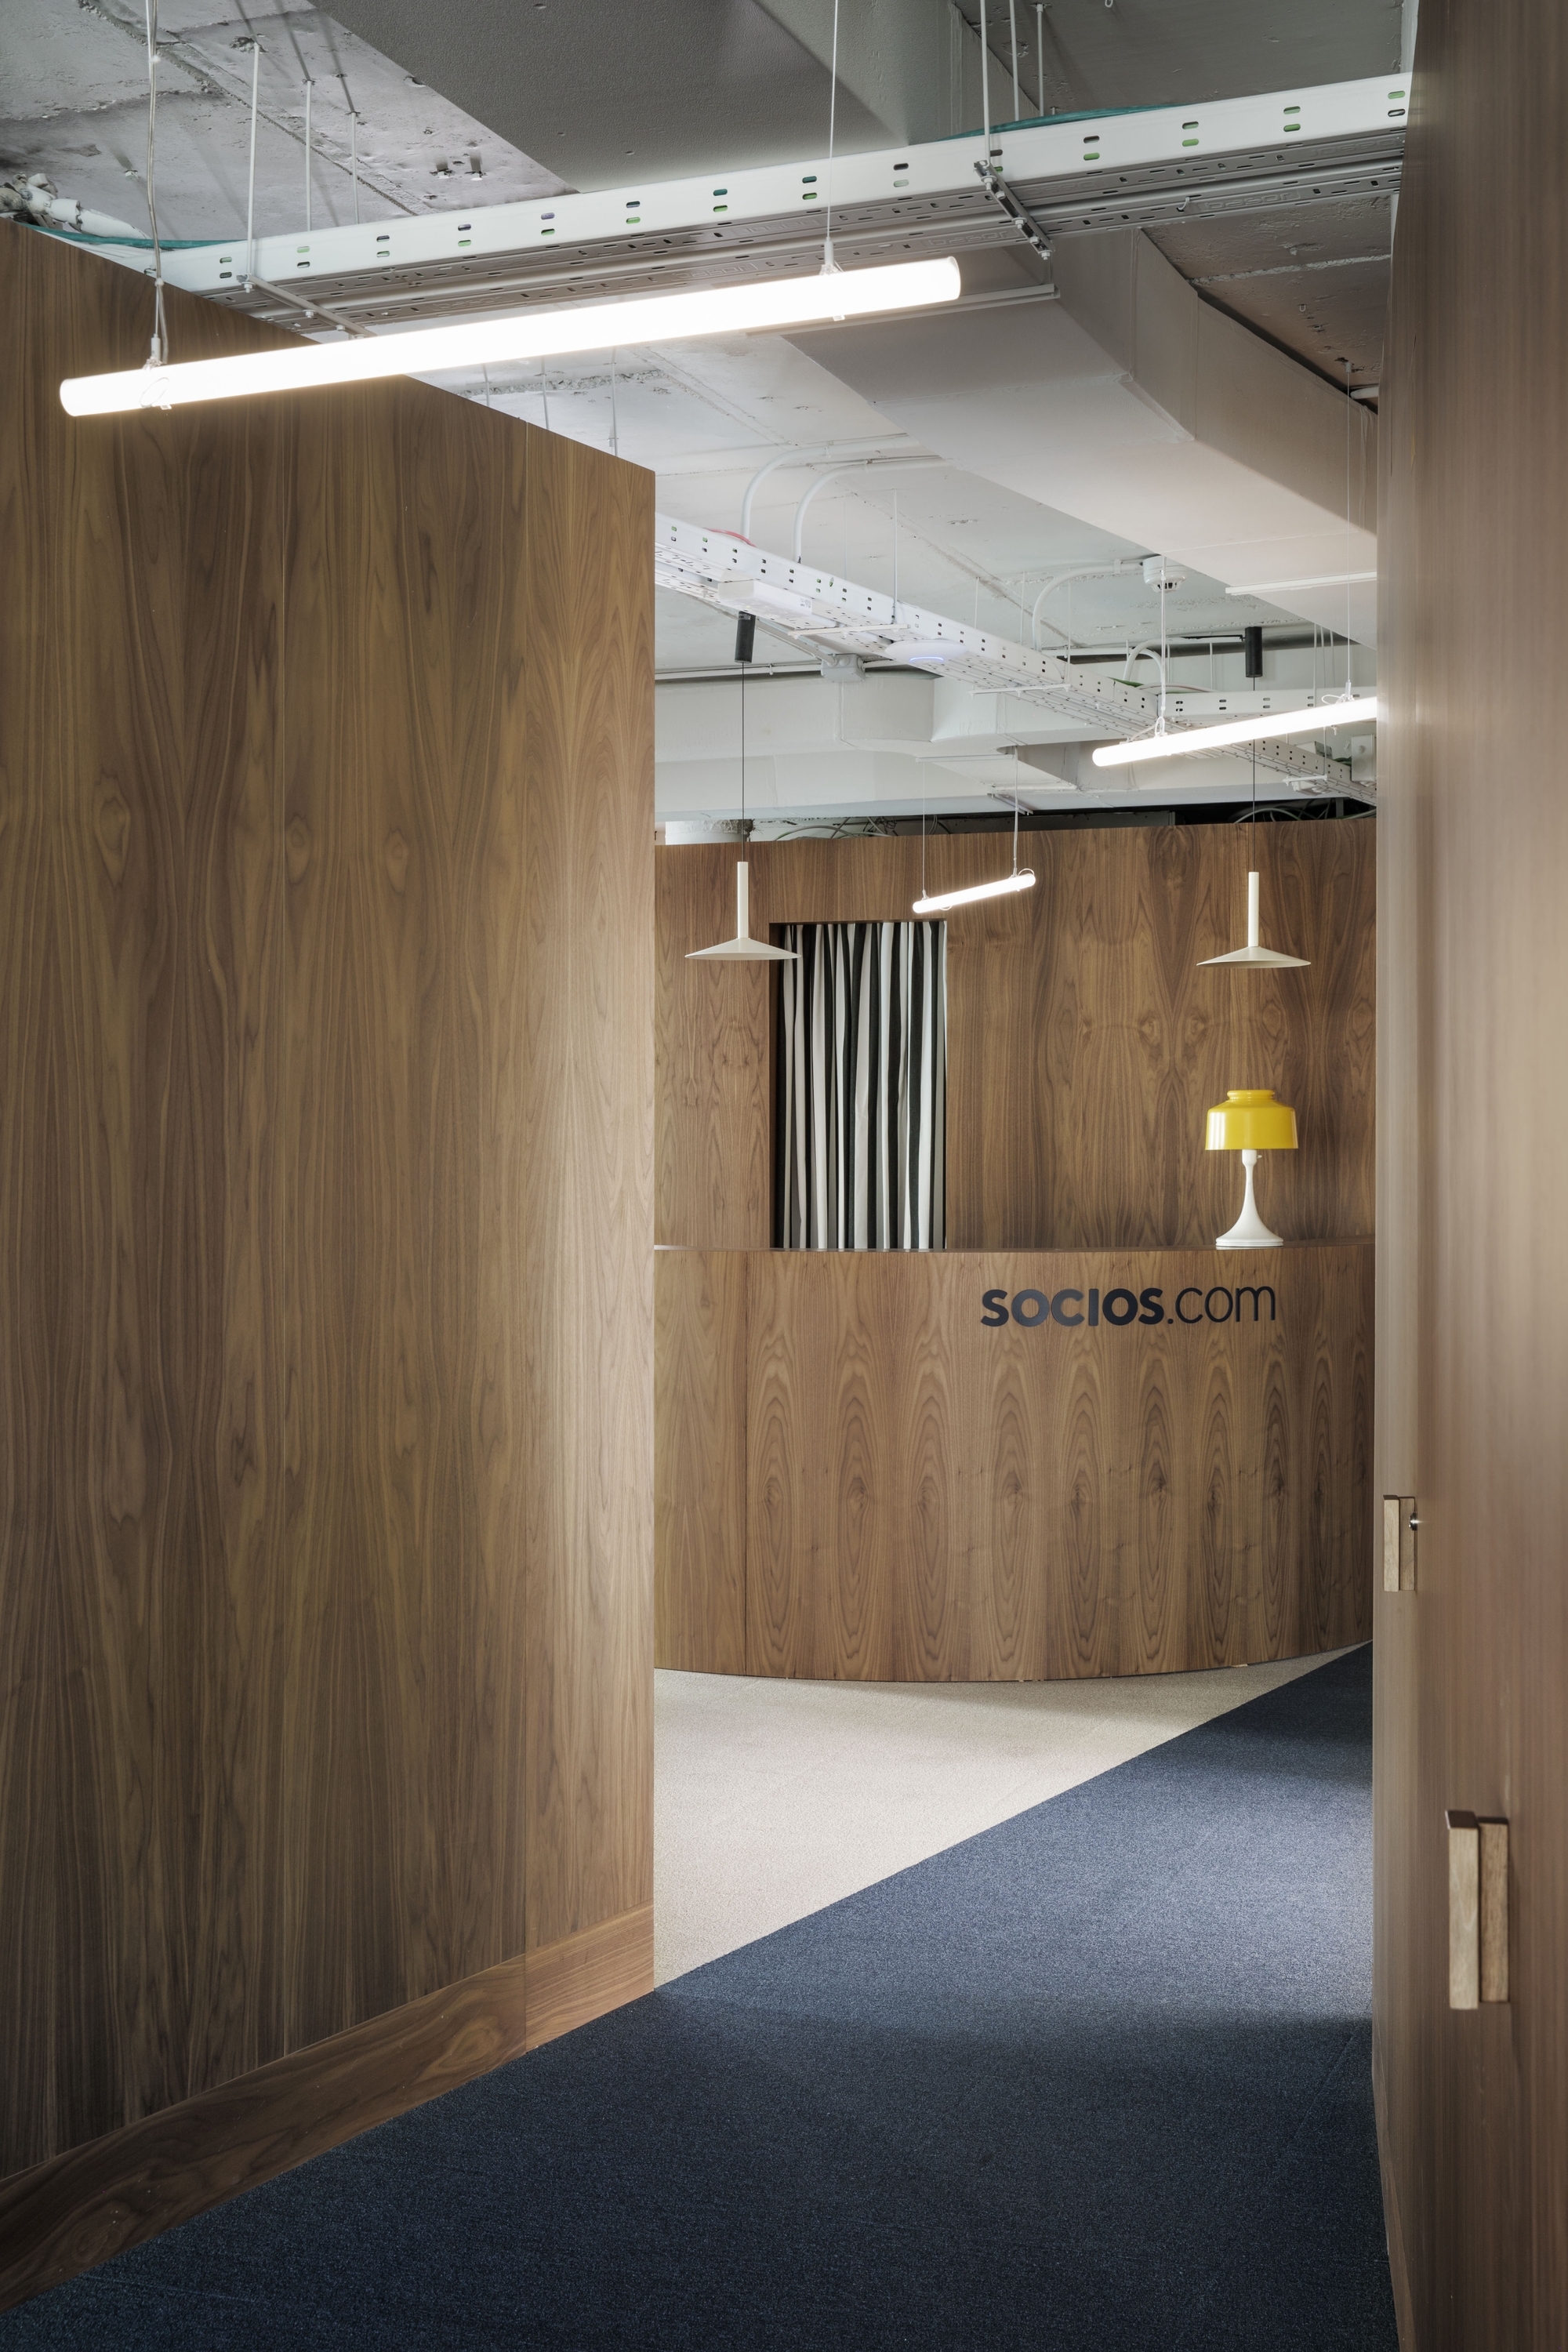 Socios.com办公室-马德里|ART-Arrakis | 建筑室内设计的创新与灵感